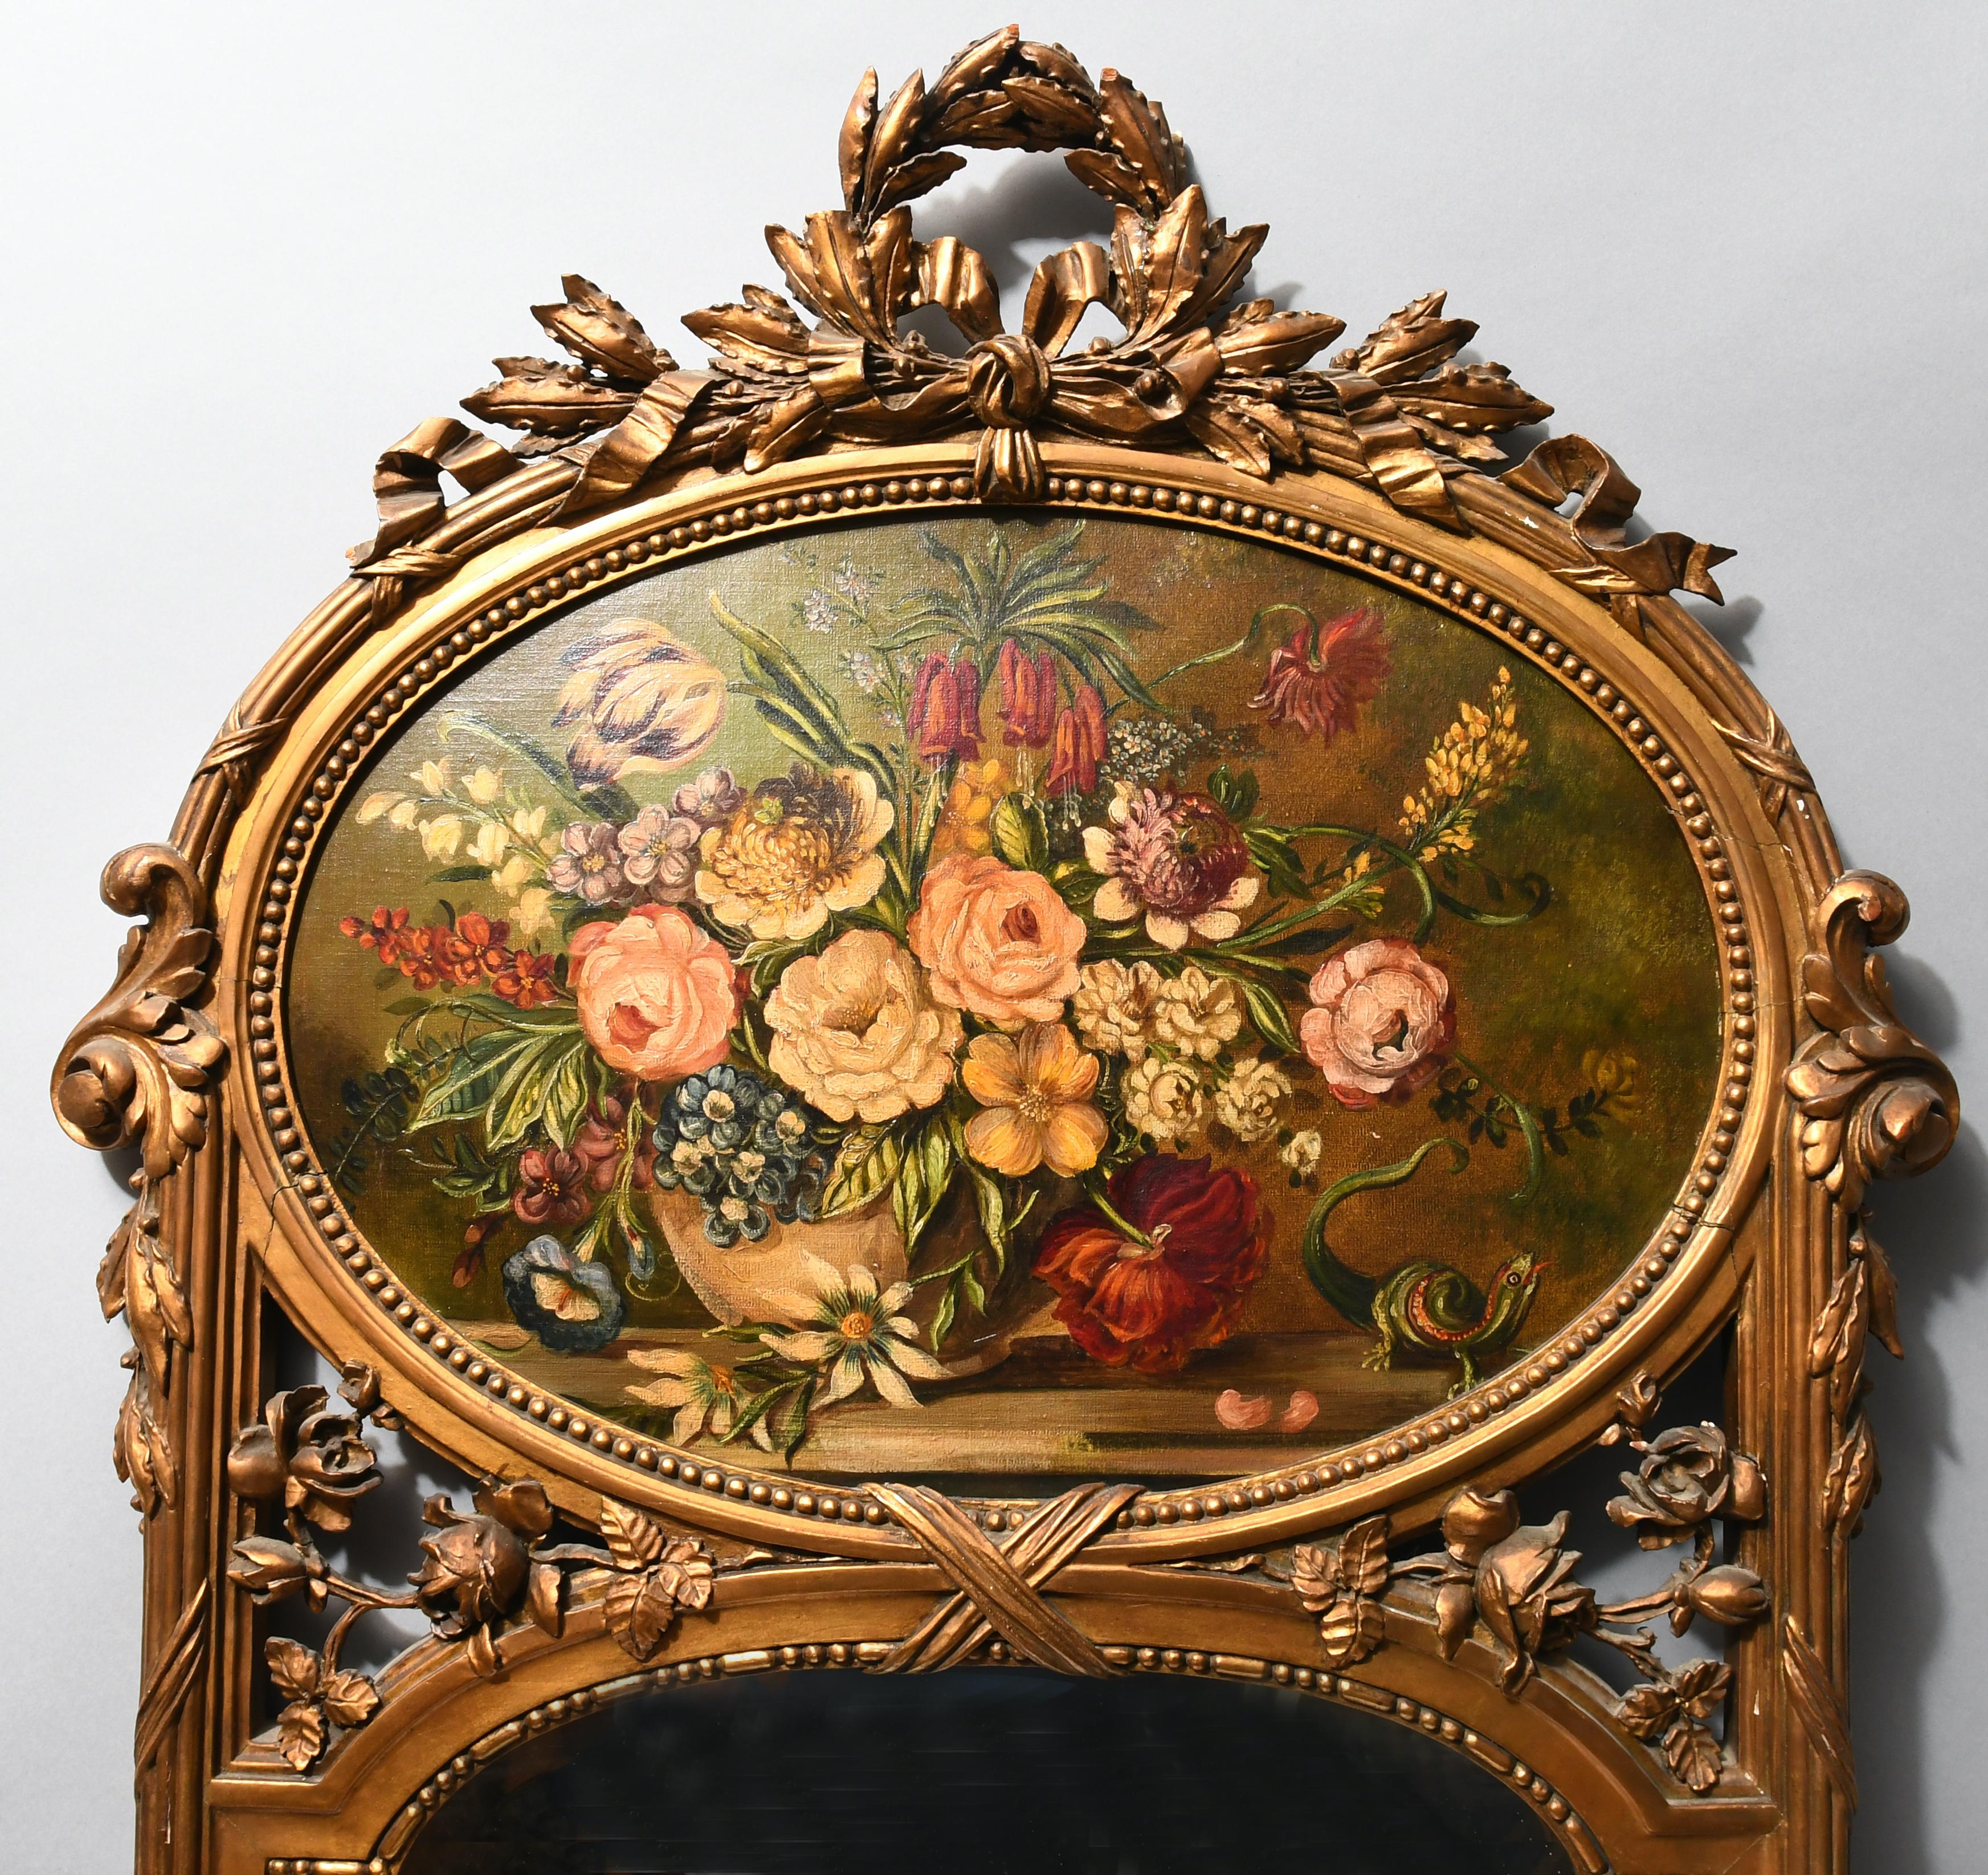 Ein Wandspiegel aus vergoldetem Holz in Bogenform mit einer Lorbeergirlande, die als Abschluss einen Kranz bildet. Der Rahmen um den Spiegel und das Gemälde ist geriffelt und mit einigen Akanthusblättern verziert. Zwischen dem Gemälde und dem